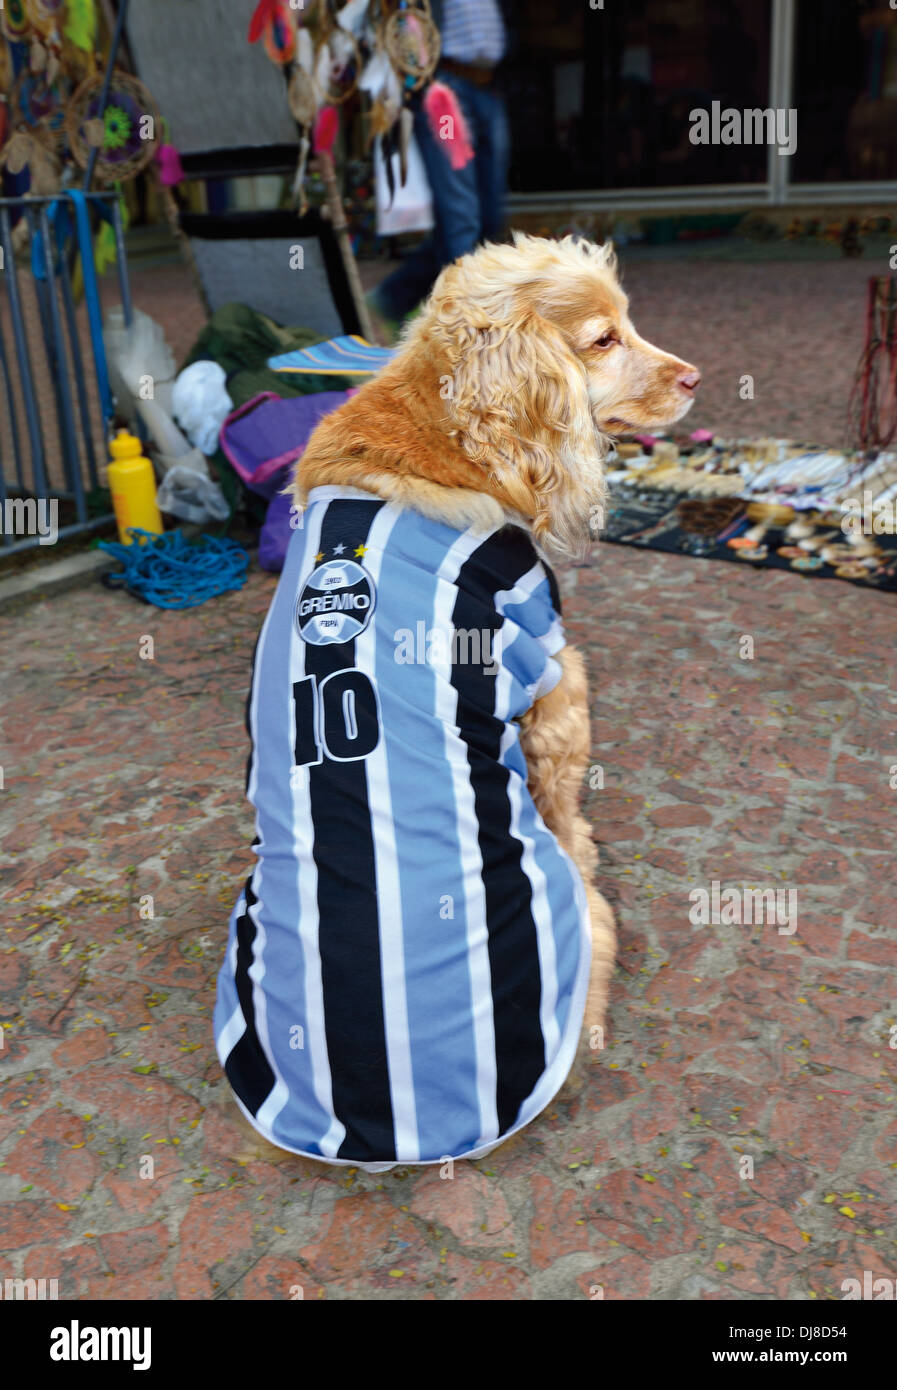 Brasil, Porto Alegre: Cocker Spaniel luciendo una camiseta del ventilador del equipo de fútbol, el Gremio Foot-Ball Porto Alegrense Foto de stock